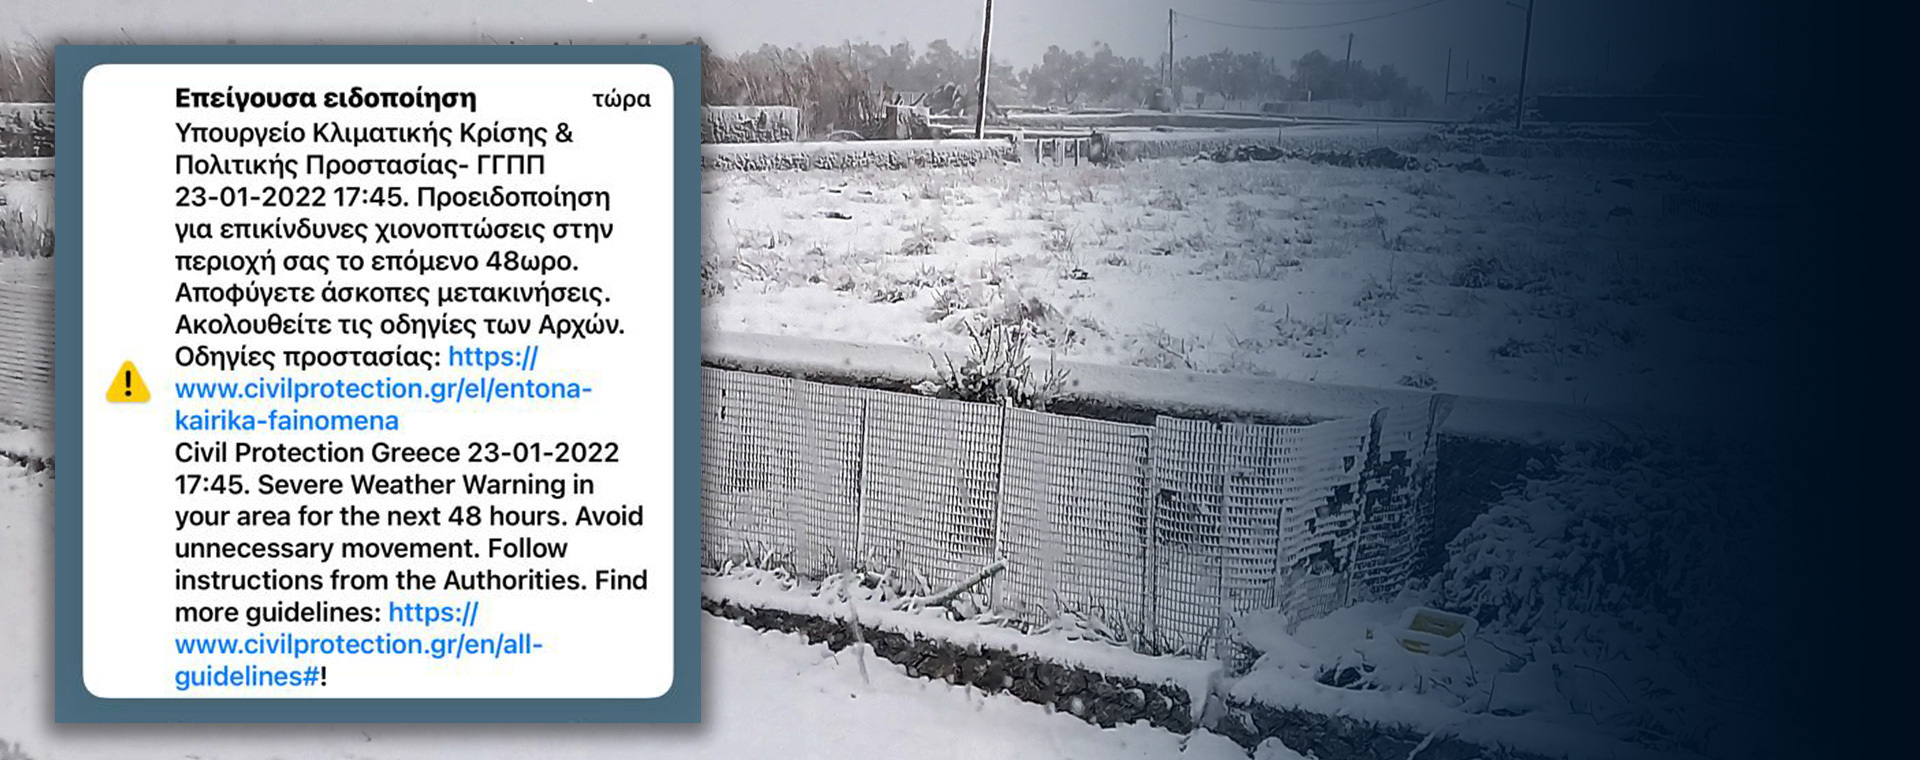 Μήνυμα του 112 στην ανατολική και βόρεια Αττική: Προειδοποιεί για επικίνδυνες χιονοπτώσεις